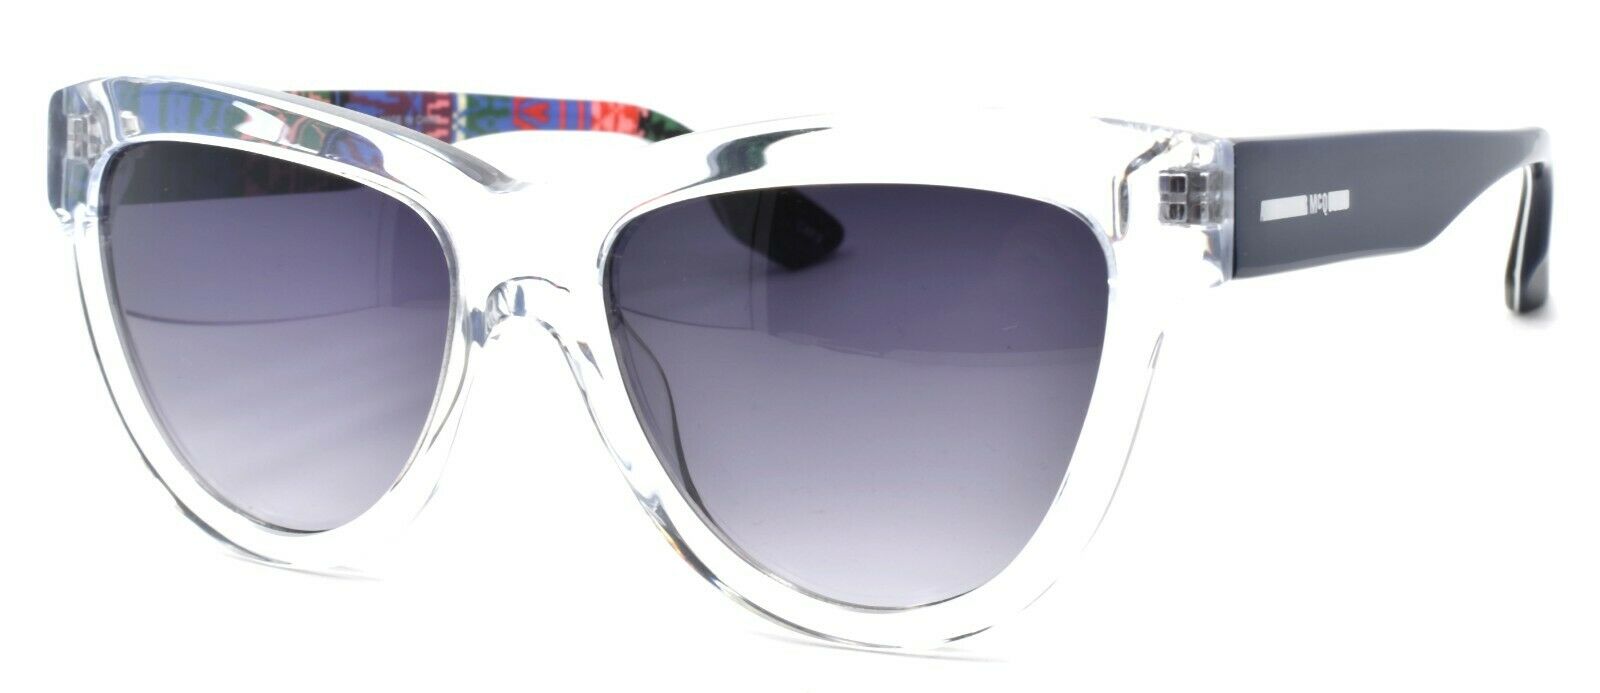 1-McQ Alexander McQueen MQ0043S 005 Women's Sunglasses Cat Eye Crystal / Blue-889652032184-IKSpecs